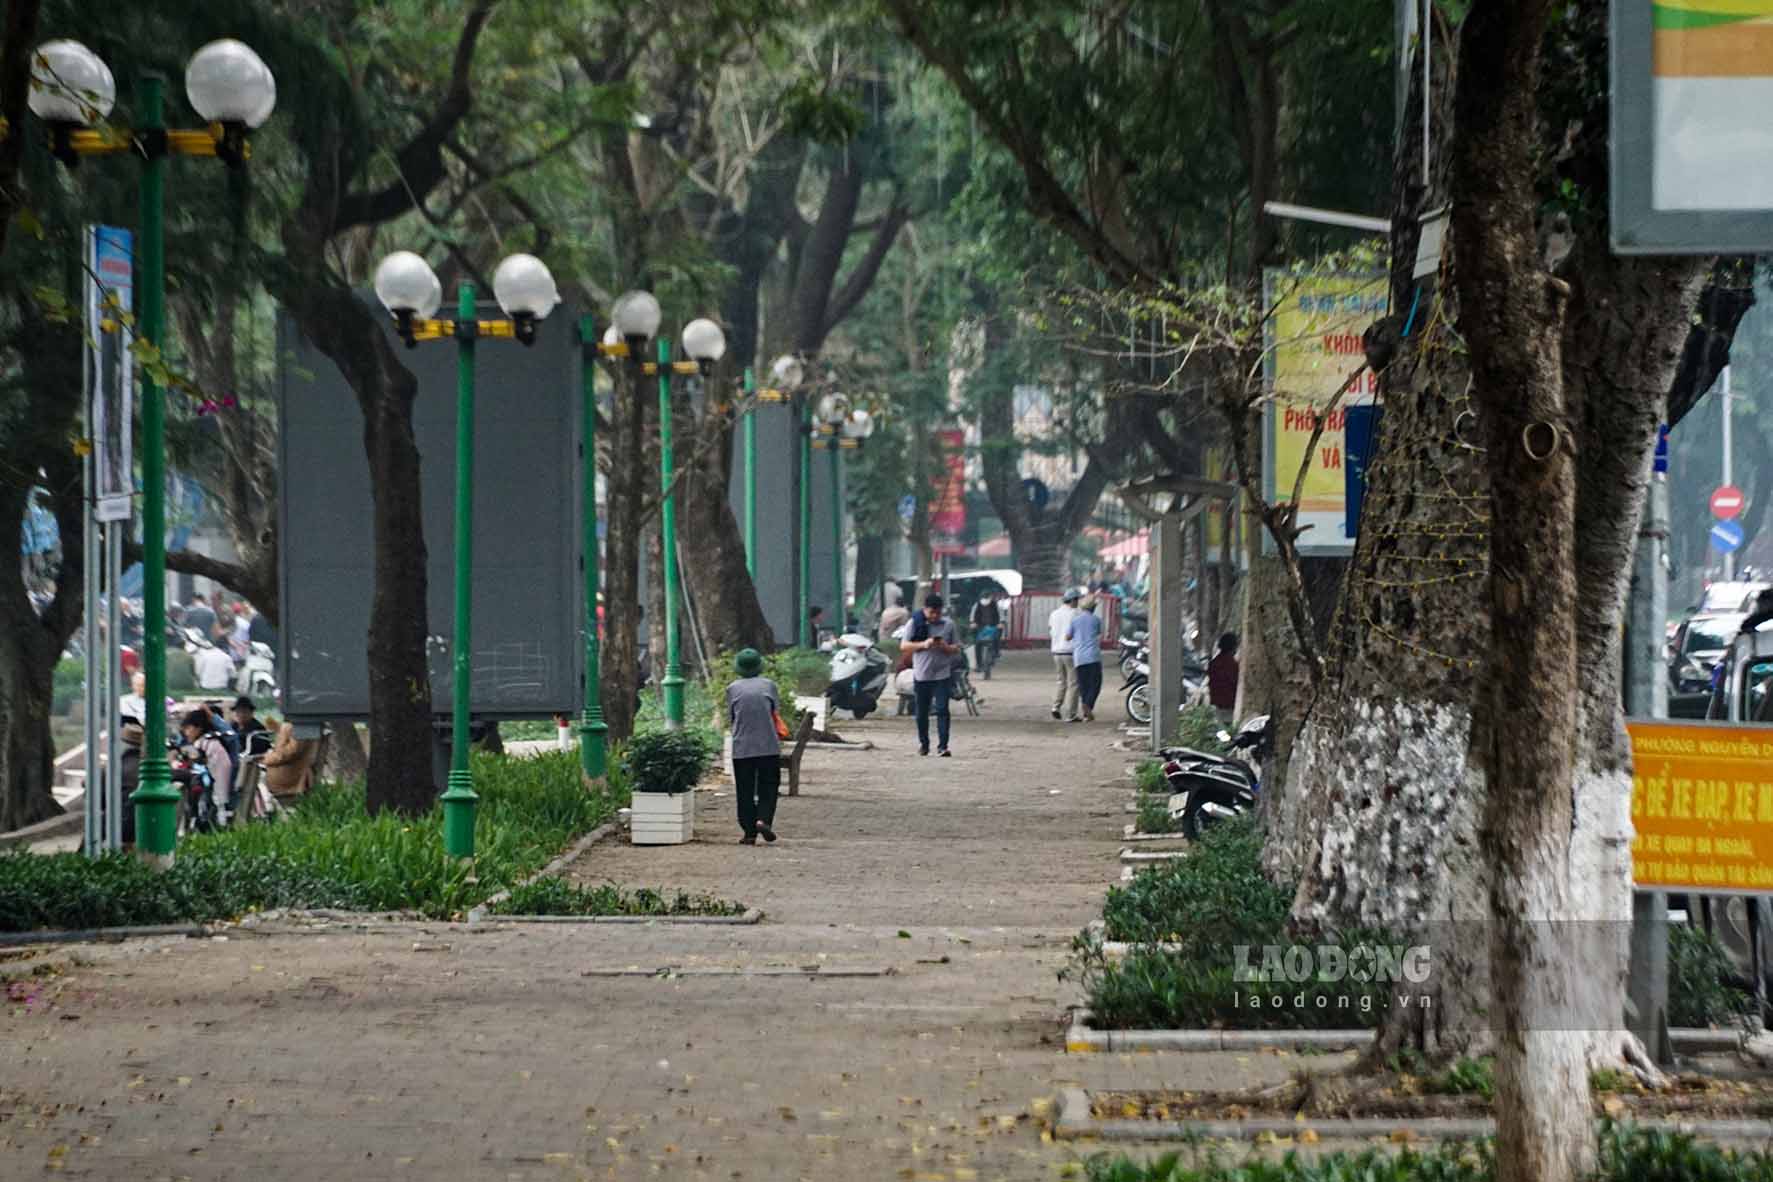 Quảng trường trung tâm nằm ở phía đường Trần Nhân Tông, giáp công viên Thống Nhất, là khu văn hóa nghệ thuật đa năng, trung tâm buôn bán, giao thương hàng hóa và nơi dừng nghỉ cho du khách. Quảng trường này cũng kết nối với công viên Thống Nhất và các khu vực khác.